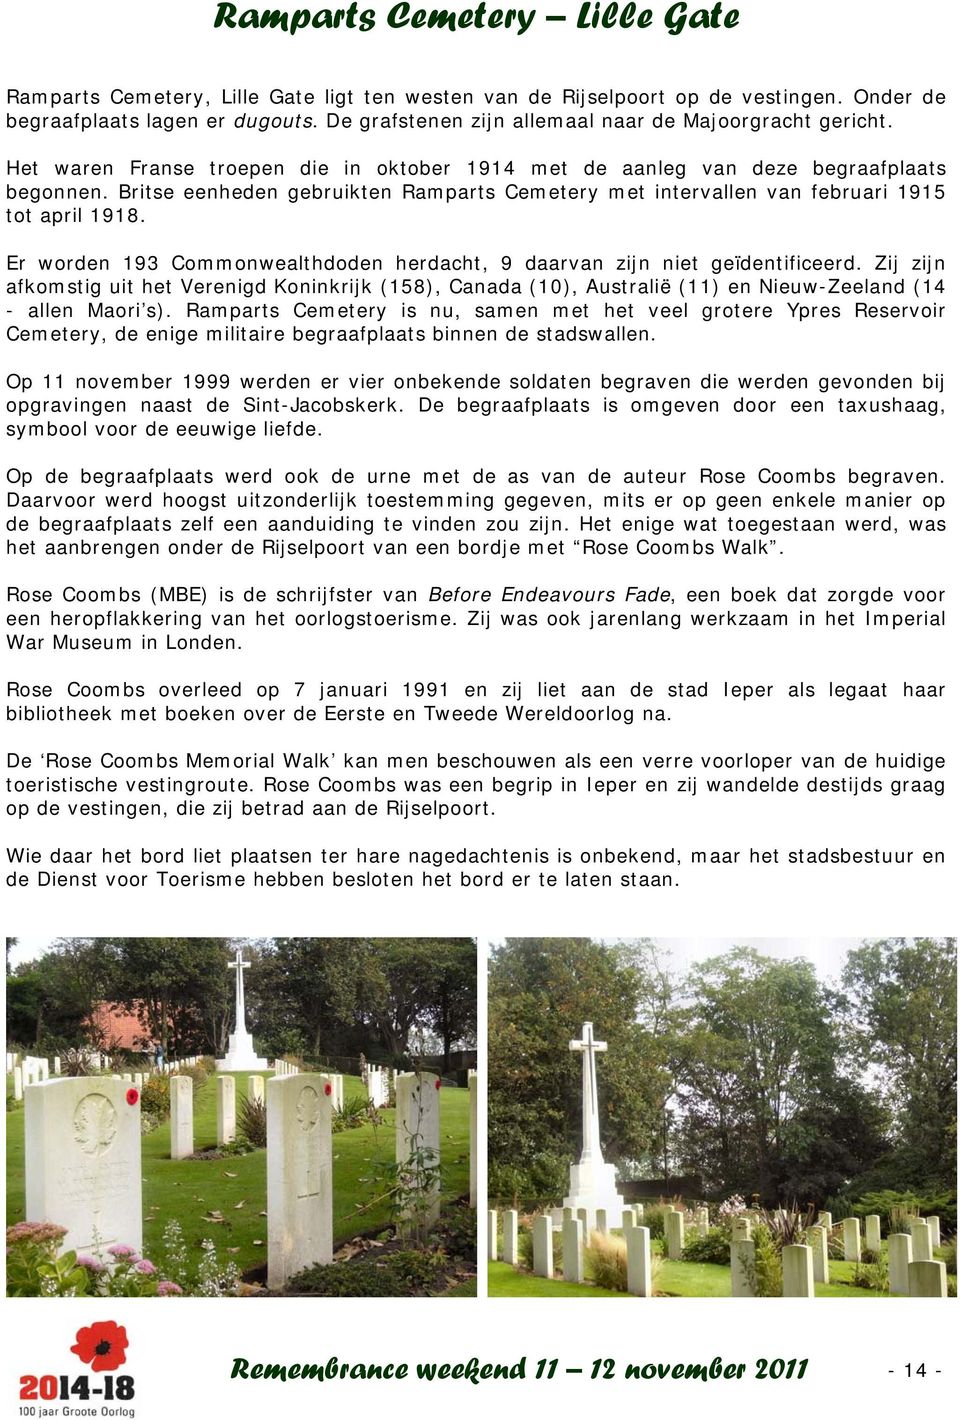 Britse eenheden gebruikten Ramparts Cemetery met intervallen van februari 1915 tot april 1918. Er worden 193 Commonwealthdoden herdacht, 9 daarvan zijn niet geïdentificeerd.